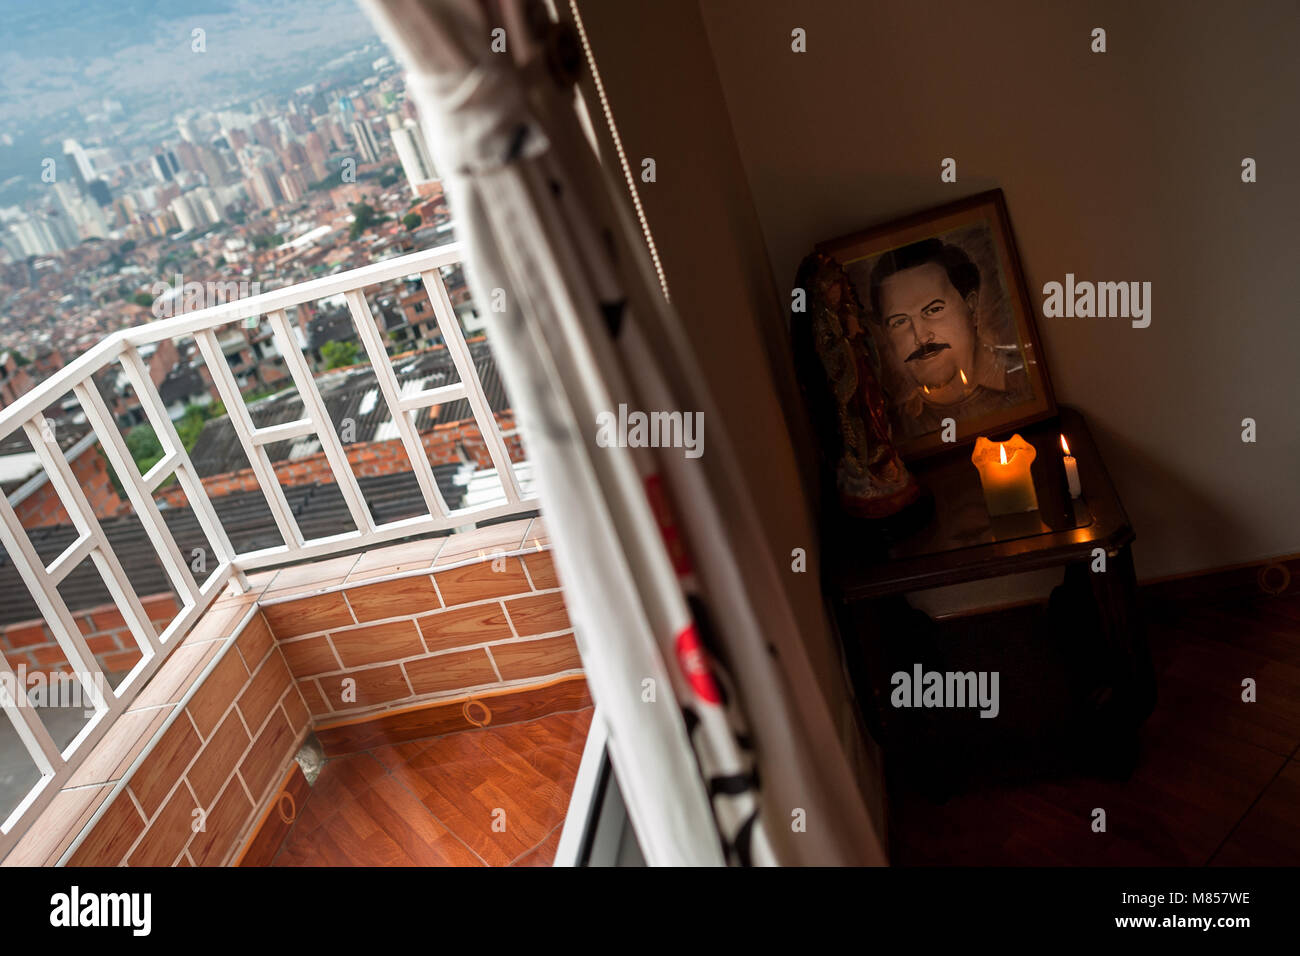 Ein Altar zu Ehren der Drogenbaron Pablo Escobar ist zu sehen im Wohnzimmer Ecke eines Hauses in Medellín, Kolumbien. Stockfoto